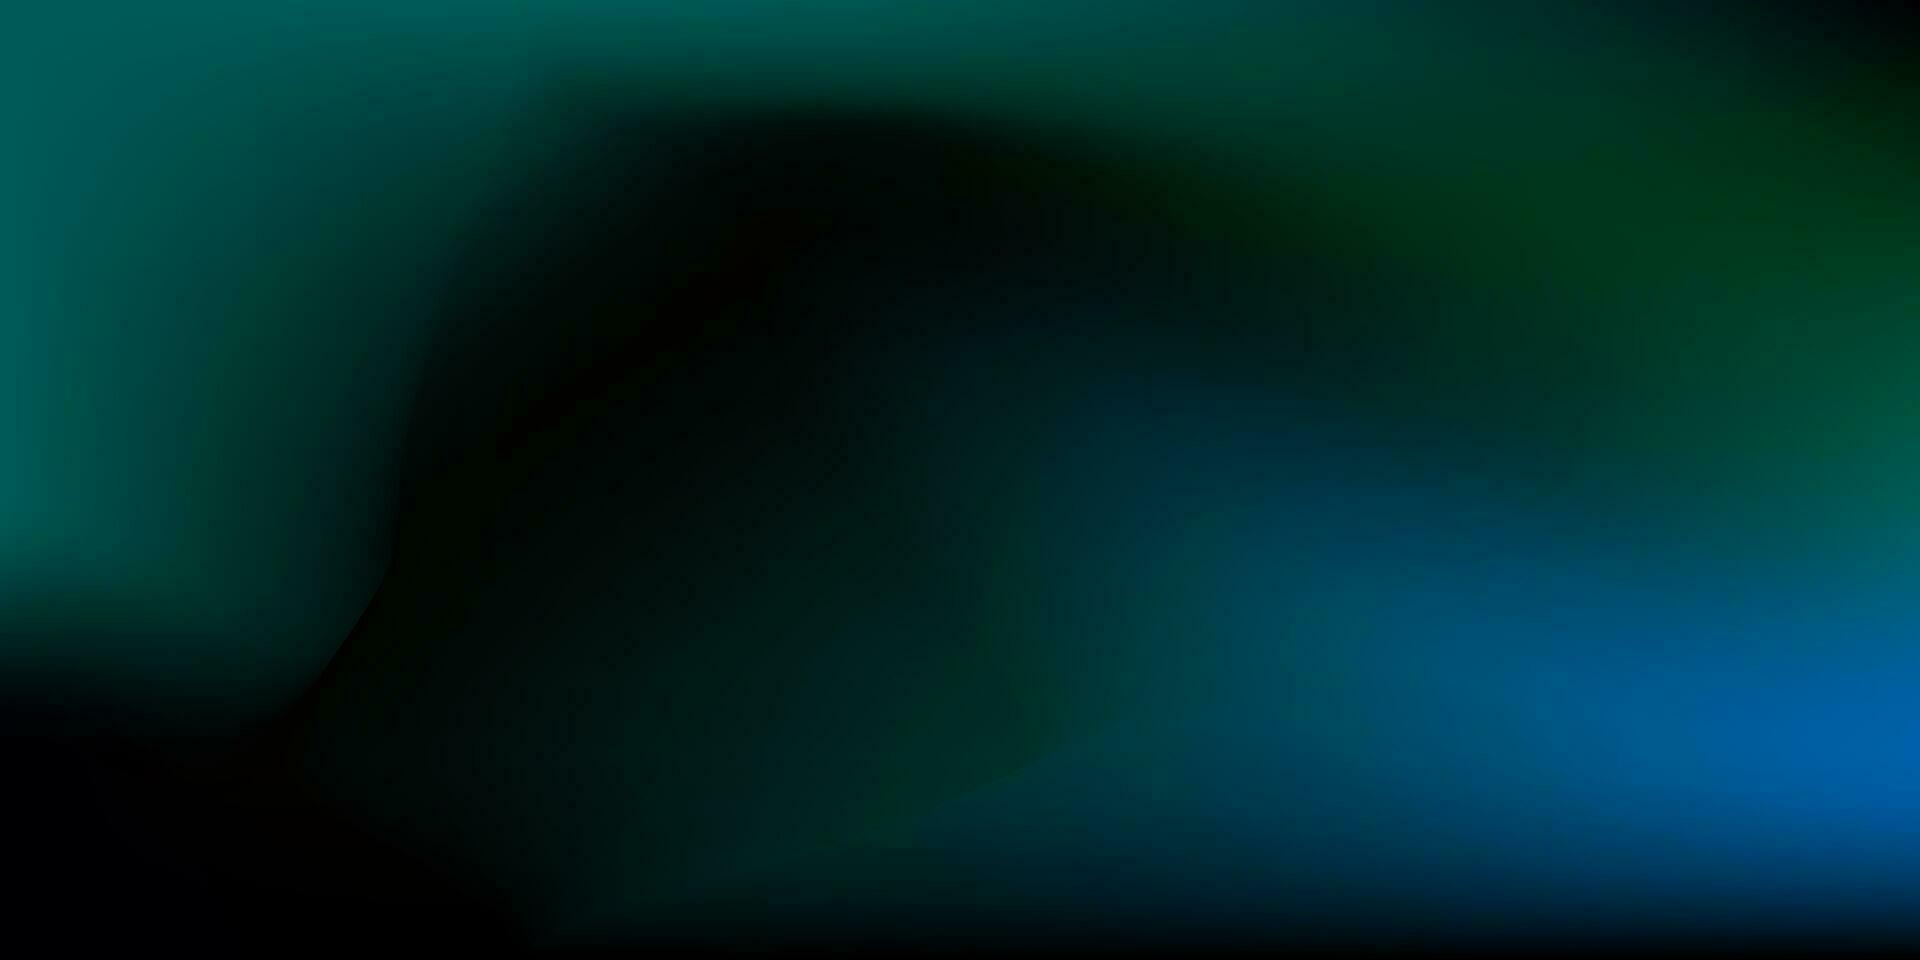 nordlig lampor, en ljus glöd på en svart bakgrund. abstrakt vektor bakgrund design. blå, grön